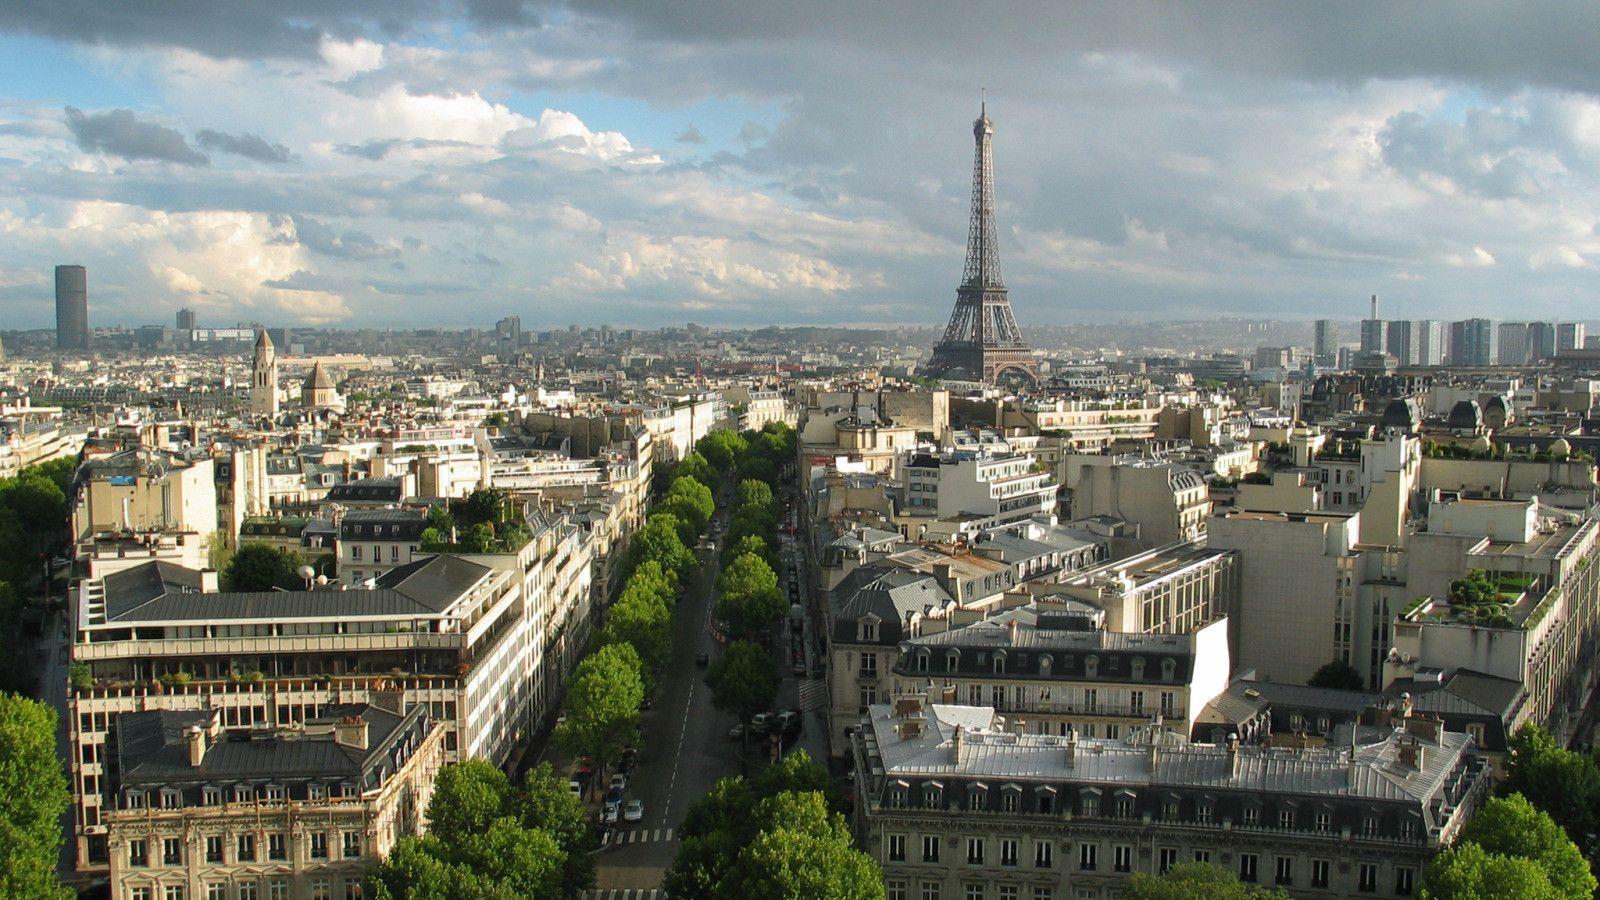 Eiffel Tower, Paris, France widescreen wallpapers